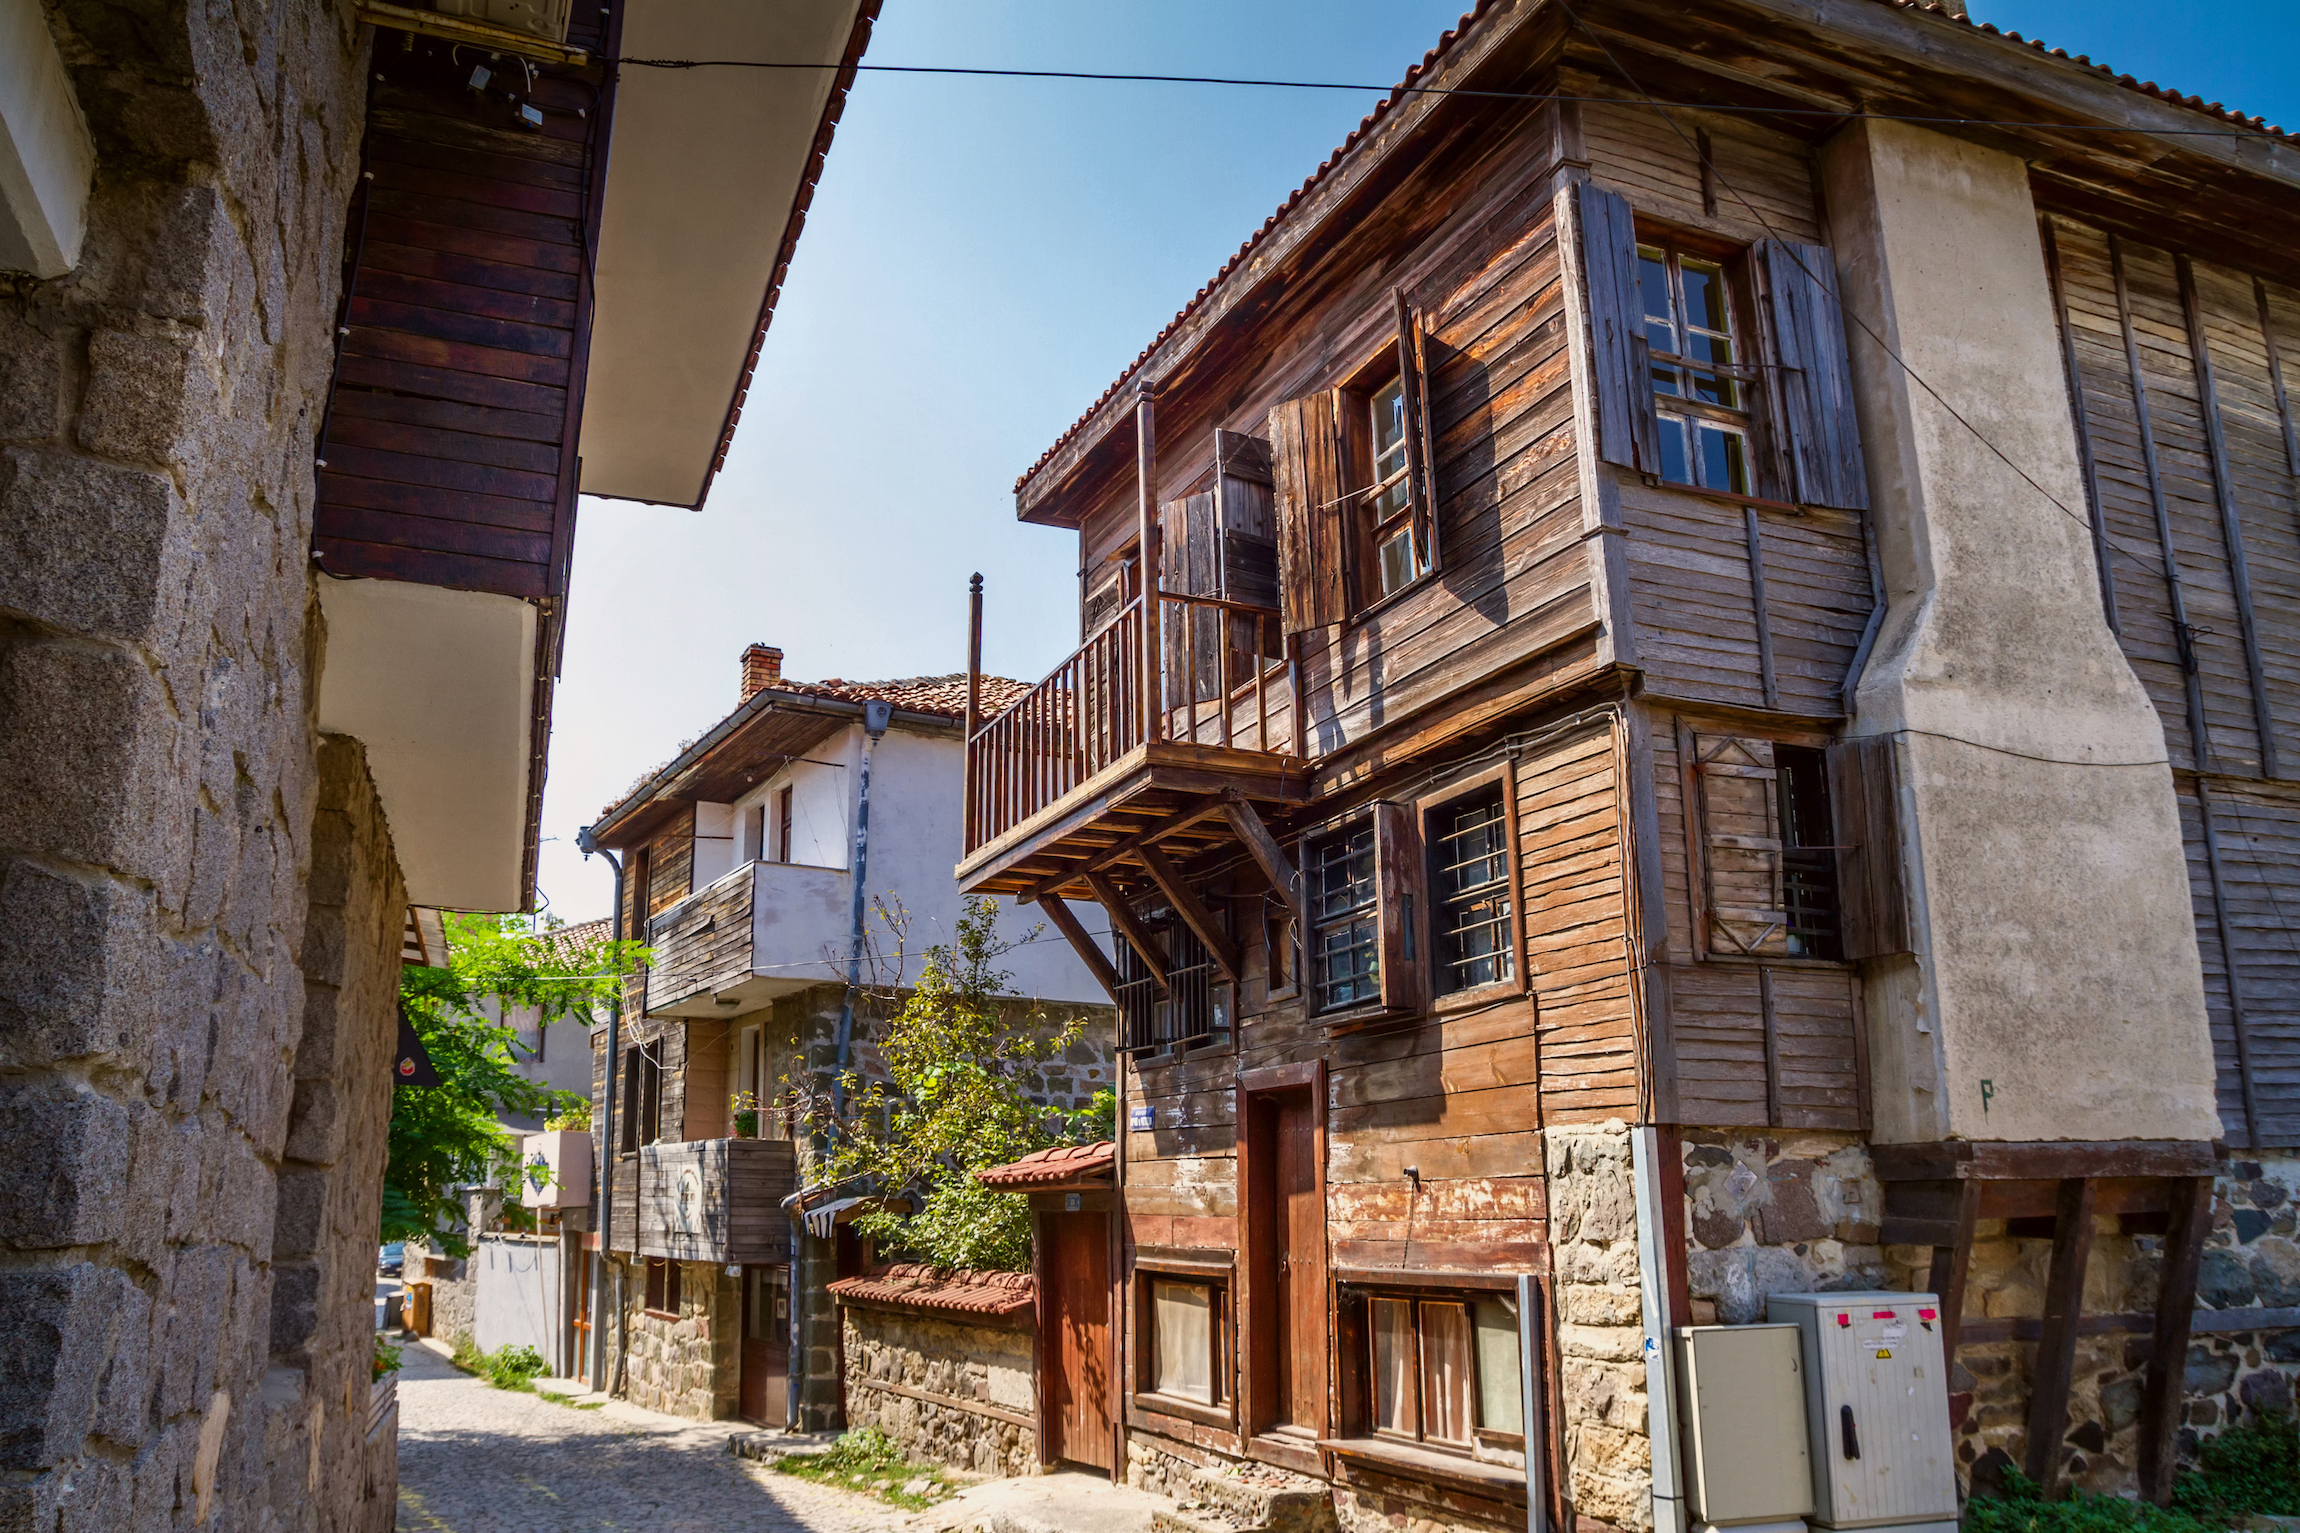 Krajobraz miejski - stare ulice i domy w stylu bałkańskim, miasto Sozopol na wybrzeżu Morza Czarnego w Bułgarii